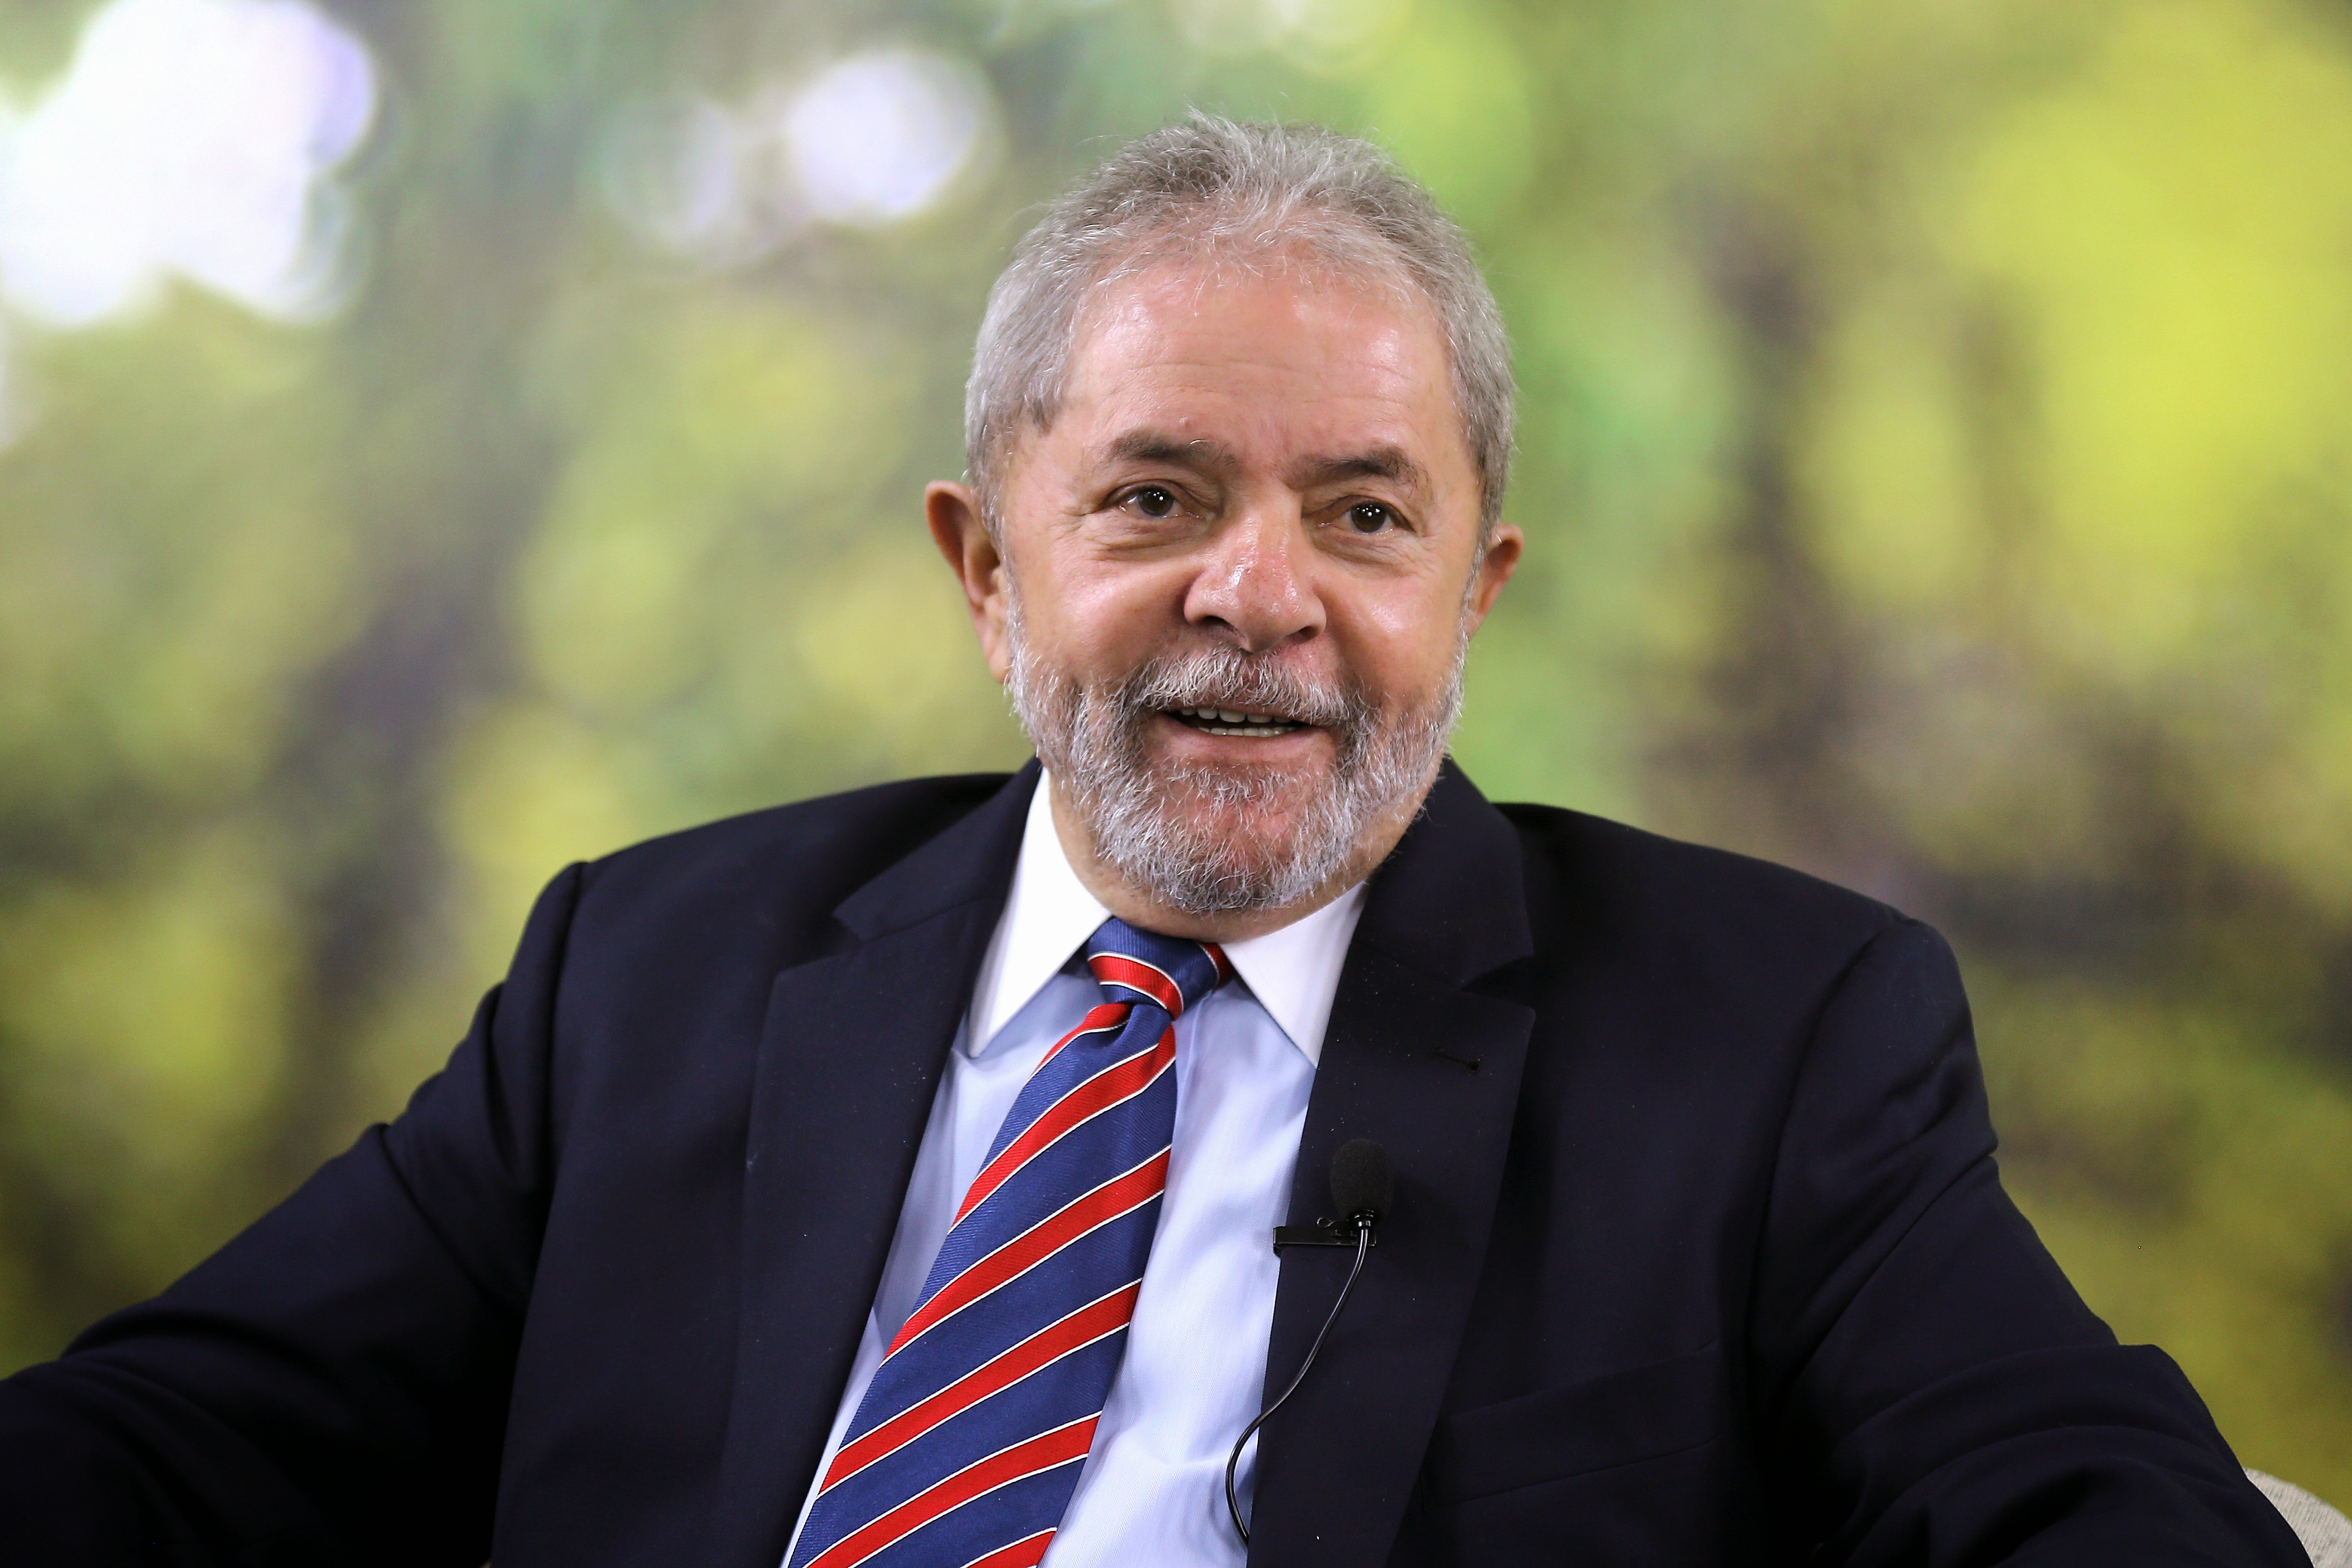  Moro deve ouvir nesta semana 23 pessoas como testemunhas de acusação em processo que envolve o ex-presidente Lula